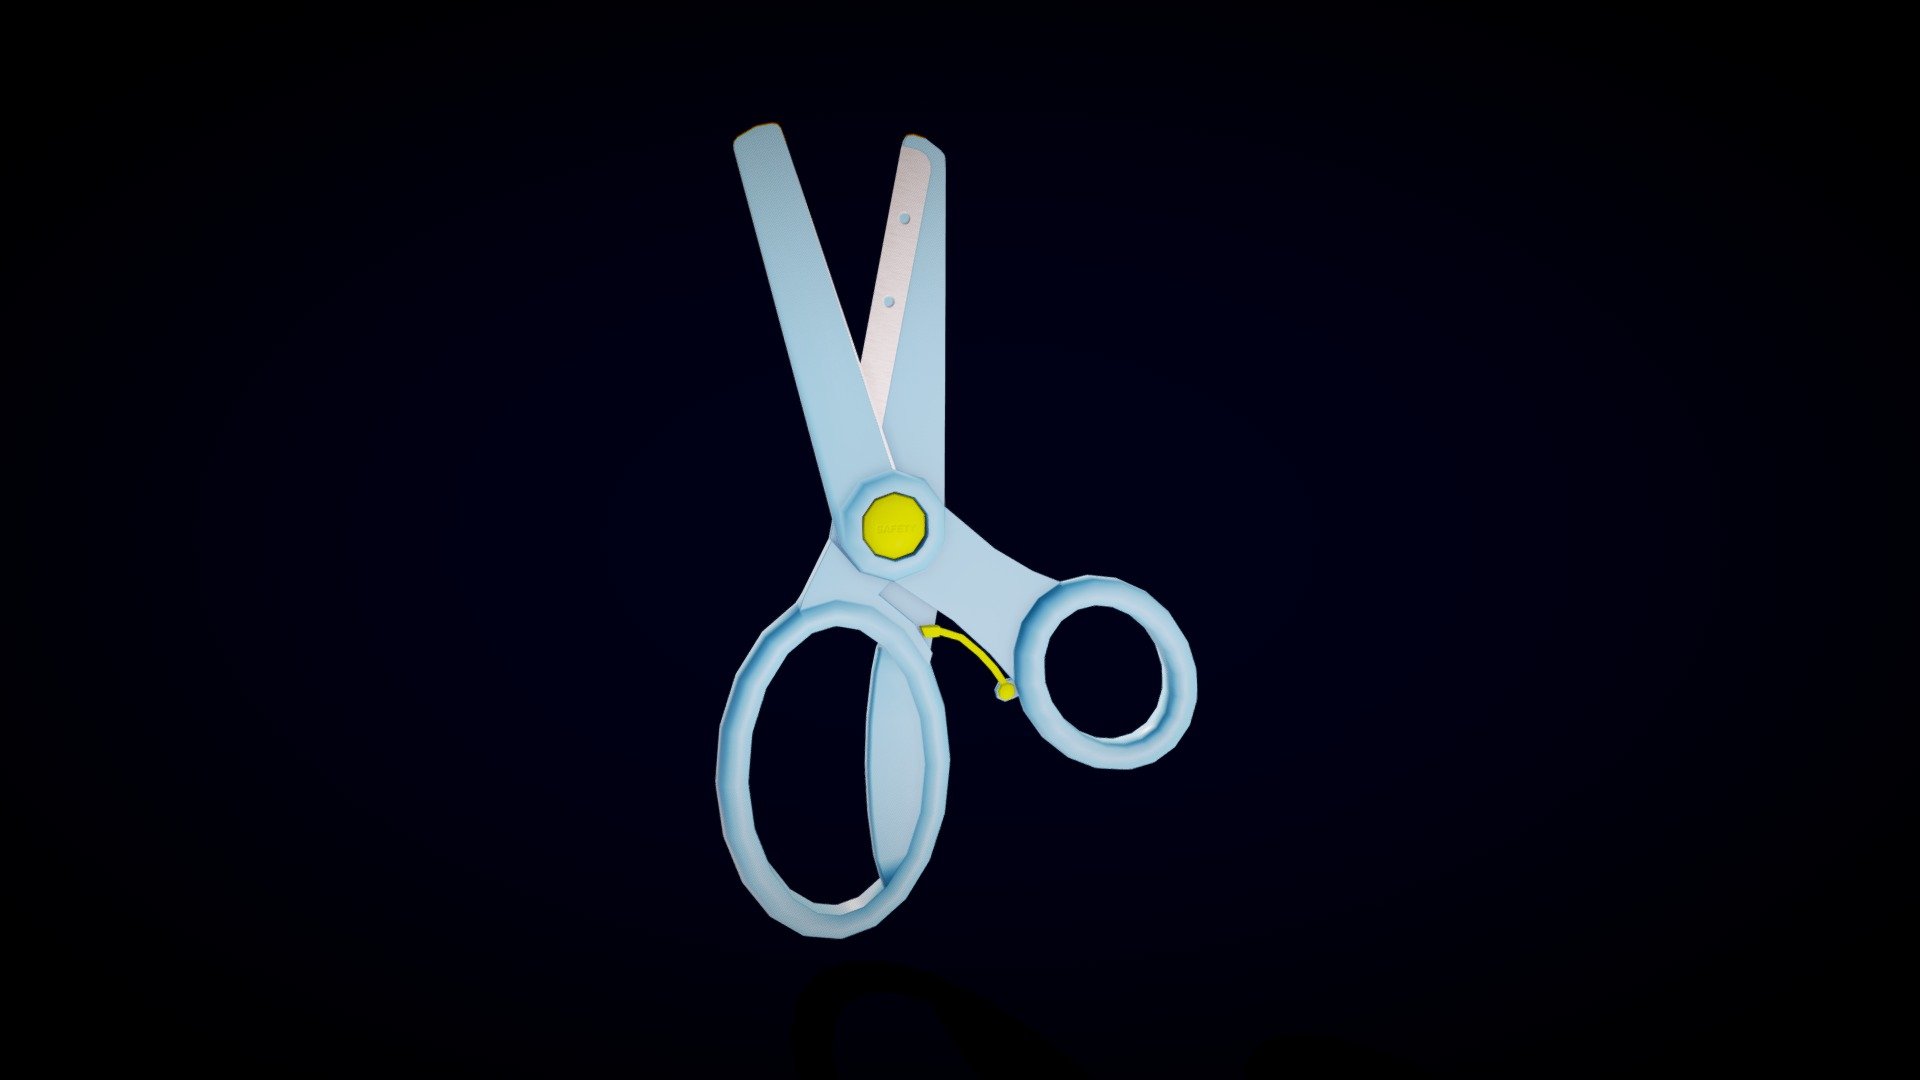 Scissors - 3D model by MagedShukry 3d model